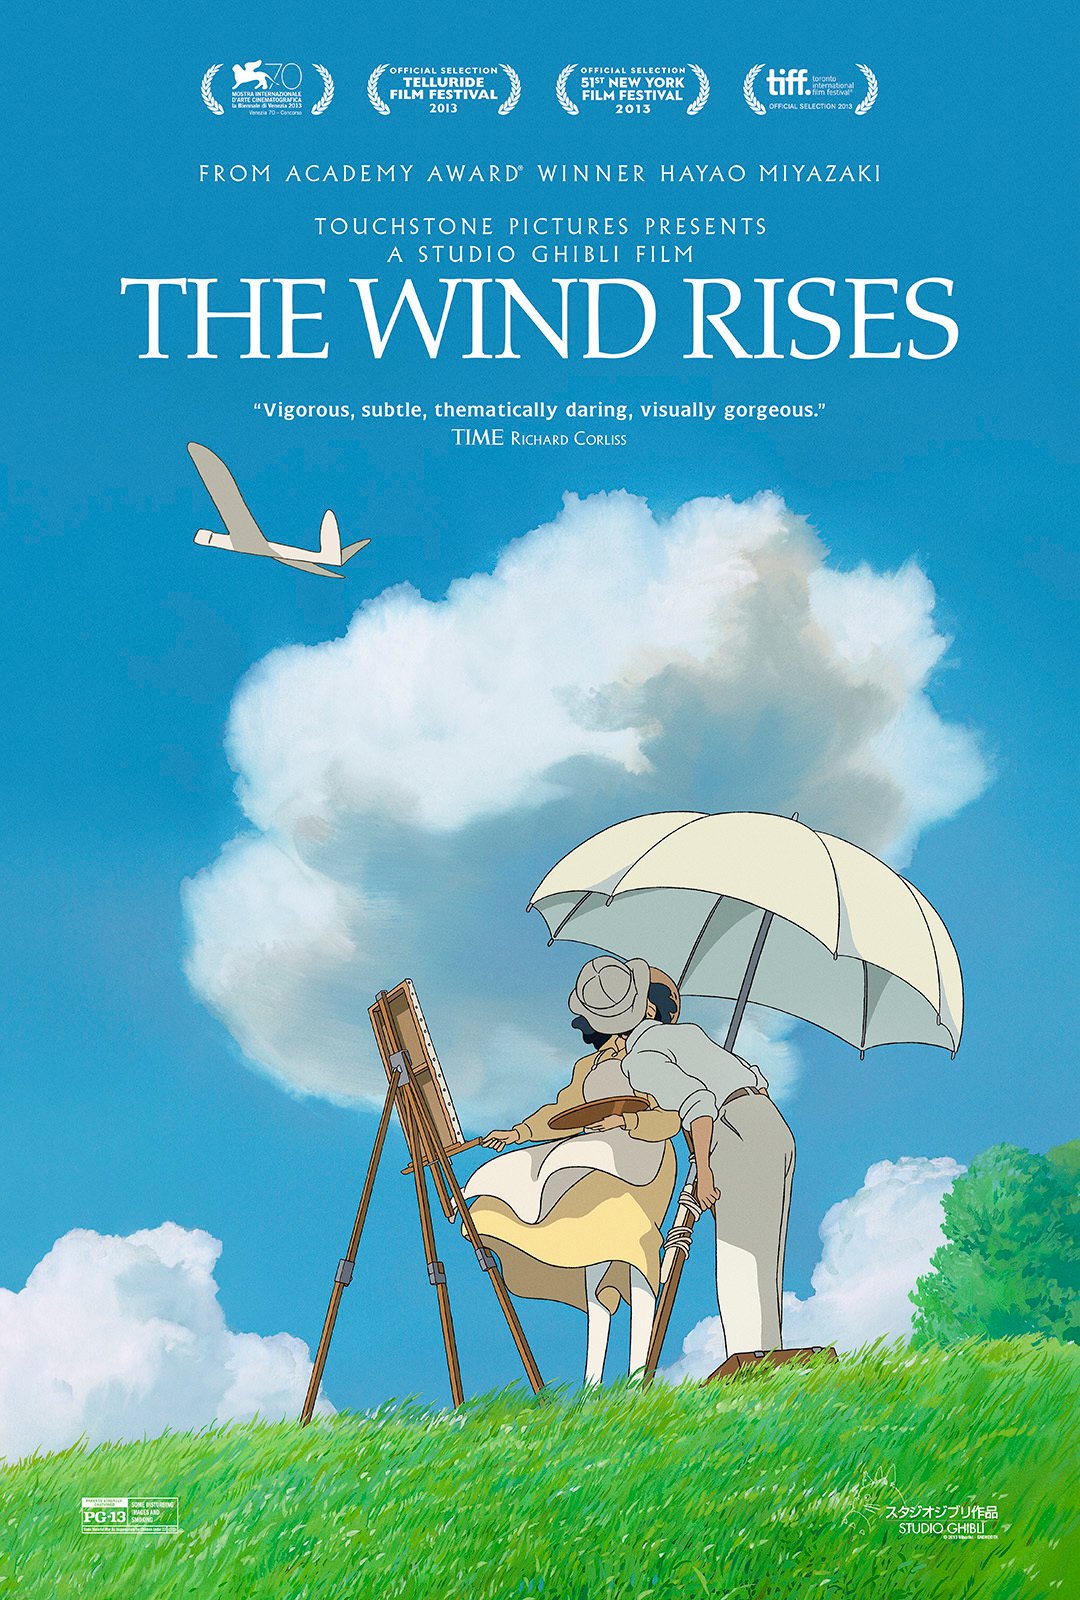 ドラゴン士 風立ちぬ の英語タイトルは The Wind Rises なのですが これは日本語タイトルをそのまま英訳したのかなと思ったら 英語でこのタイトルの意味は 風が強くなる となるようです 日本語の 風が立つ とほぼ同じ表現なんですね ちなみに 堀